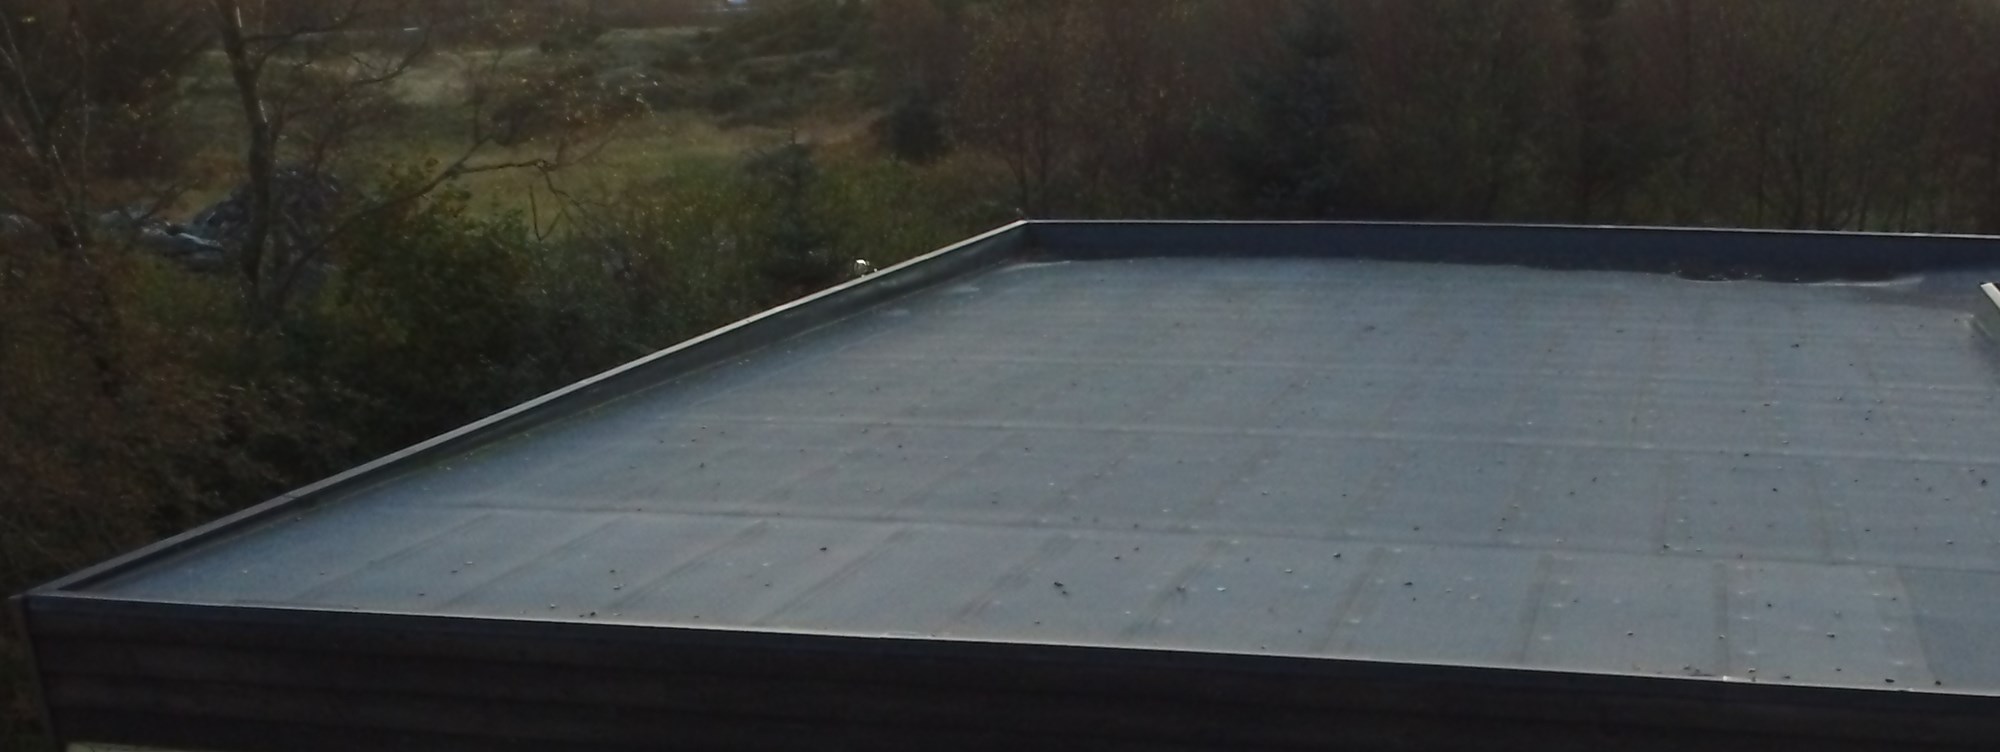 Isolering av tak i garasje - tykkelse - flatt tak .jpg - BWNBS